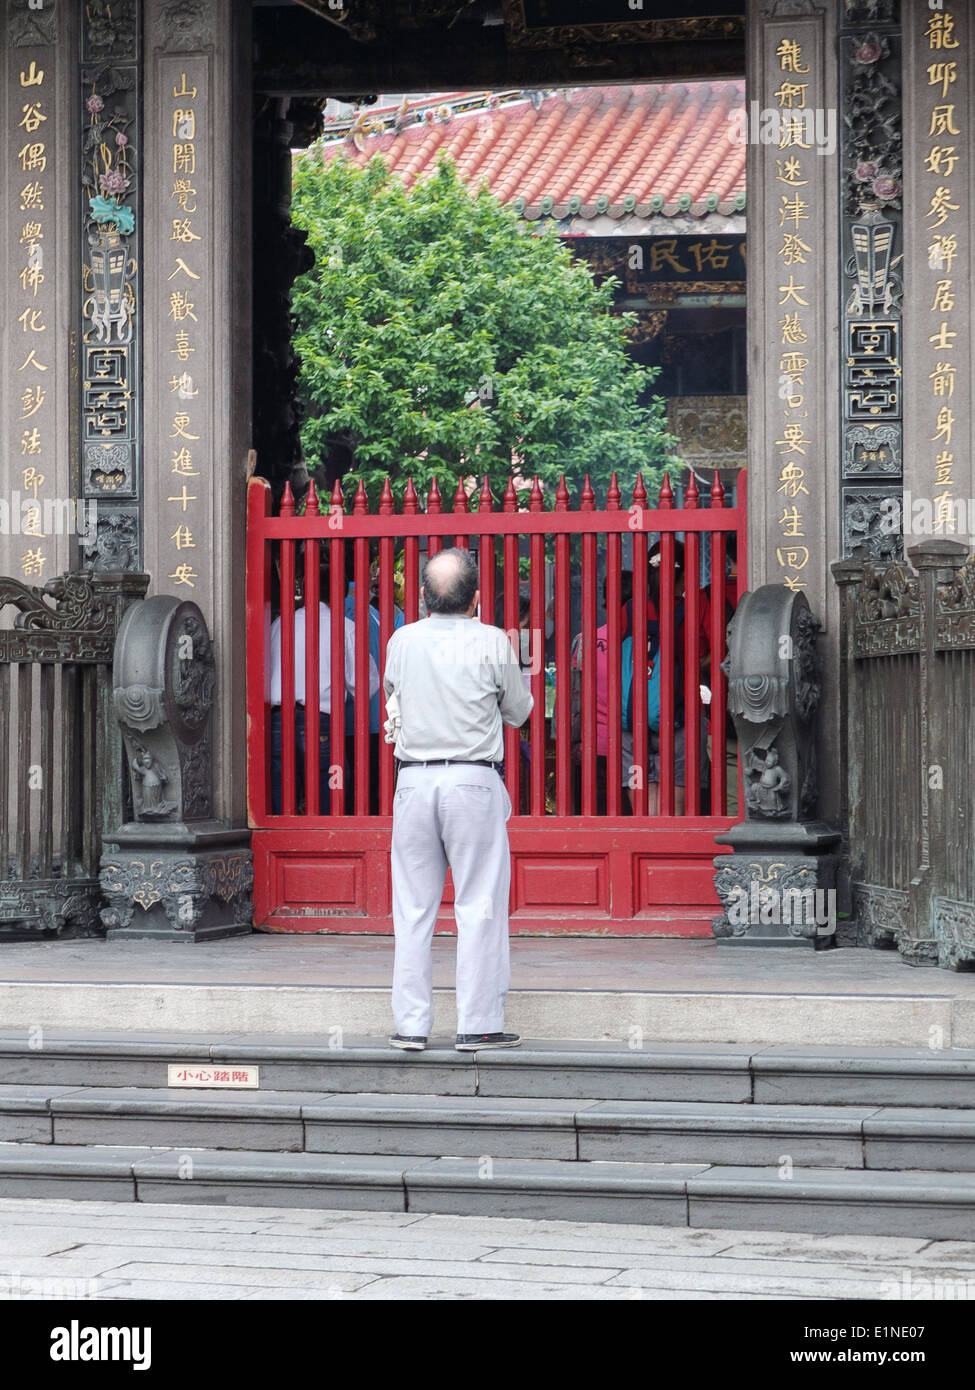 L'homme rend hommage à l'entrée de Temple de Longshan, parmi les plus anciens temples Bouddhistes de Taipei, Taiwan. Banque D'Images